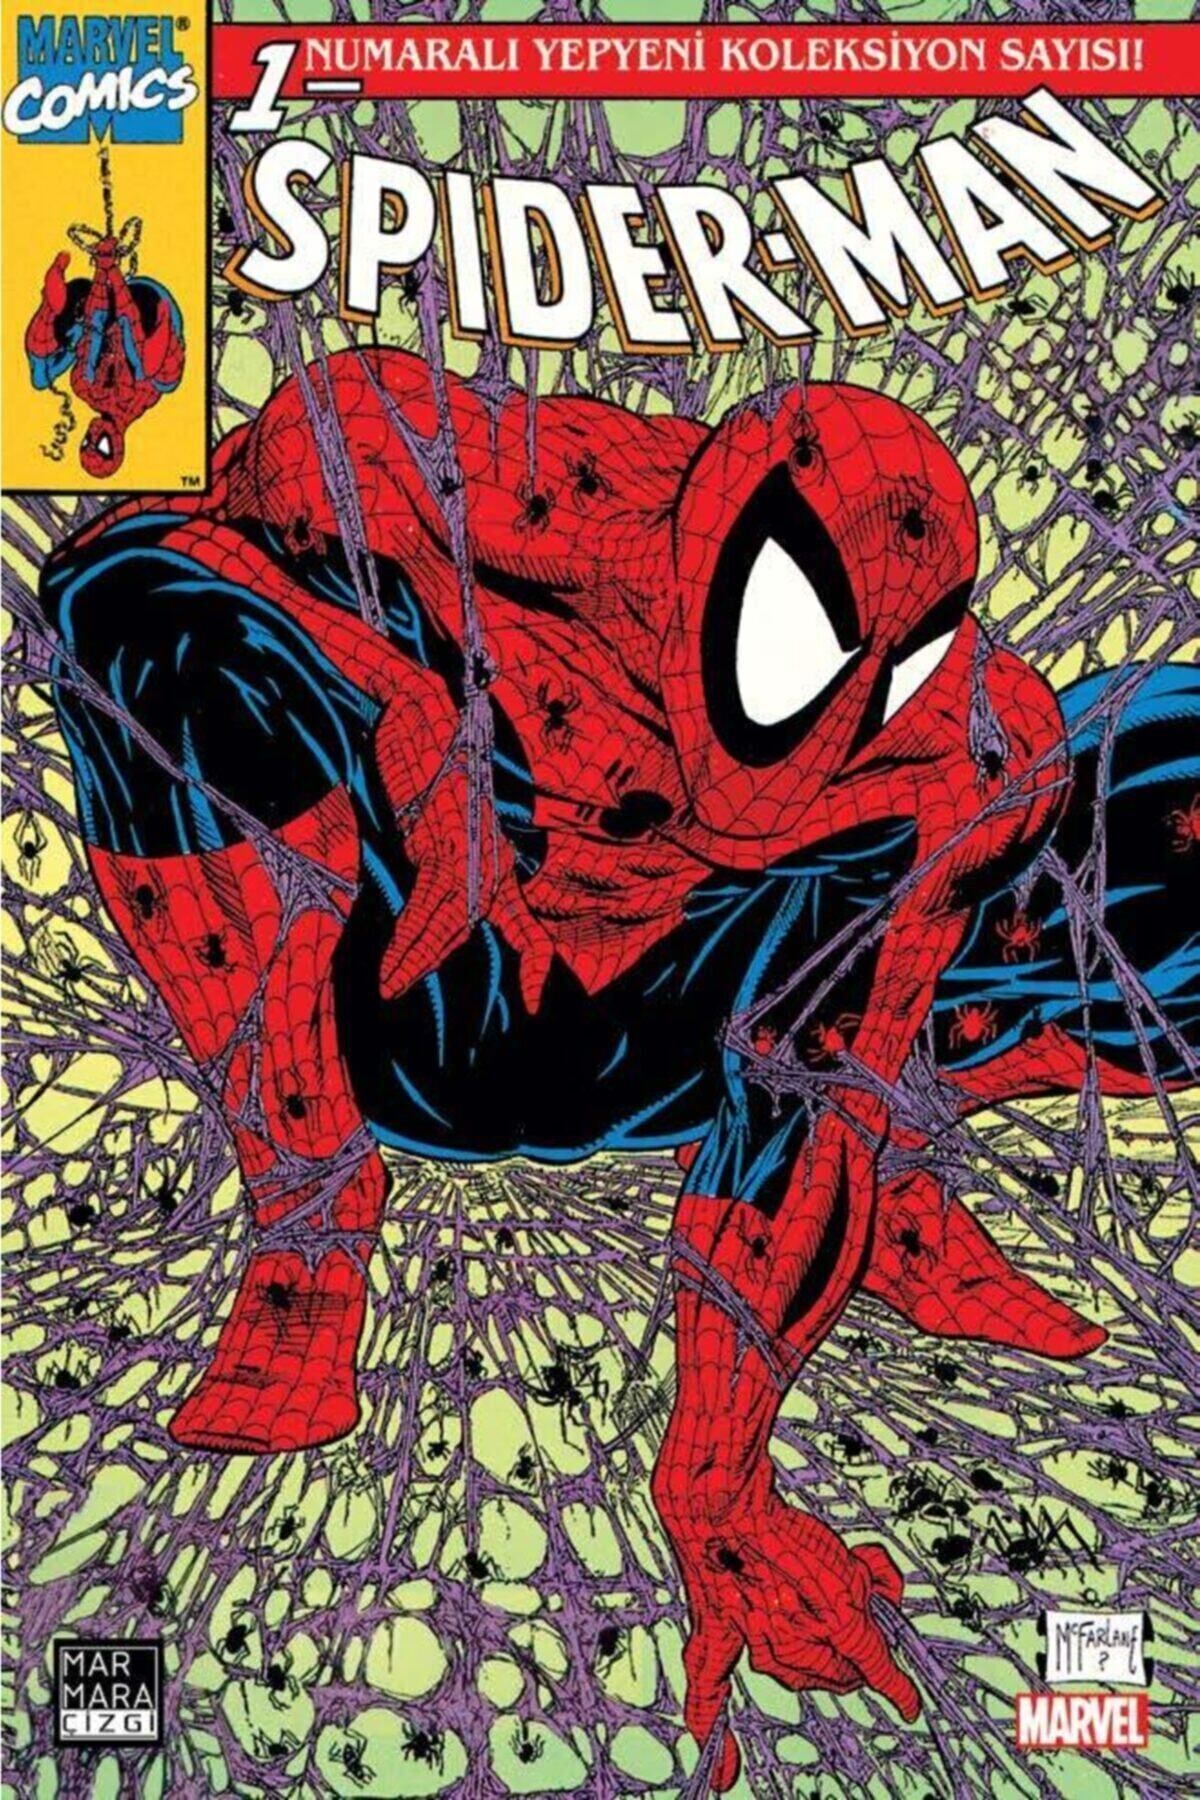 Marmara Çizgi Yayınları Spider-man 1